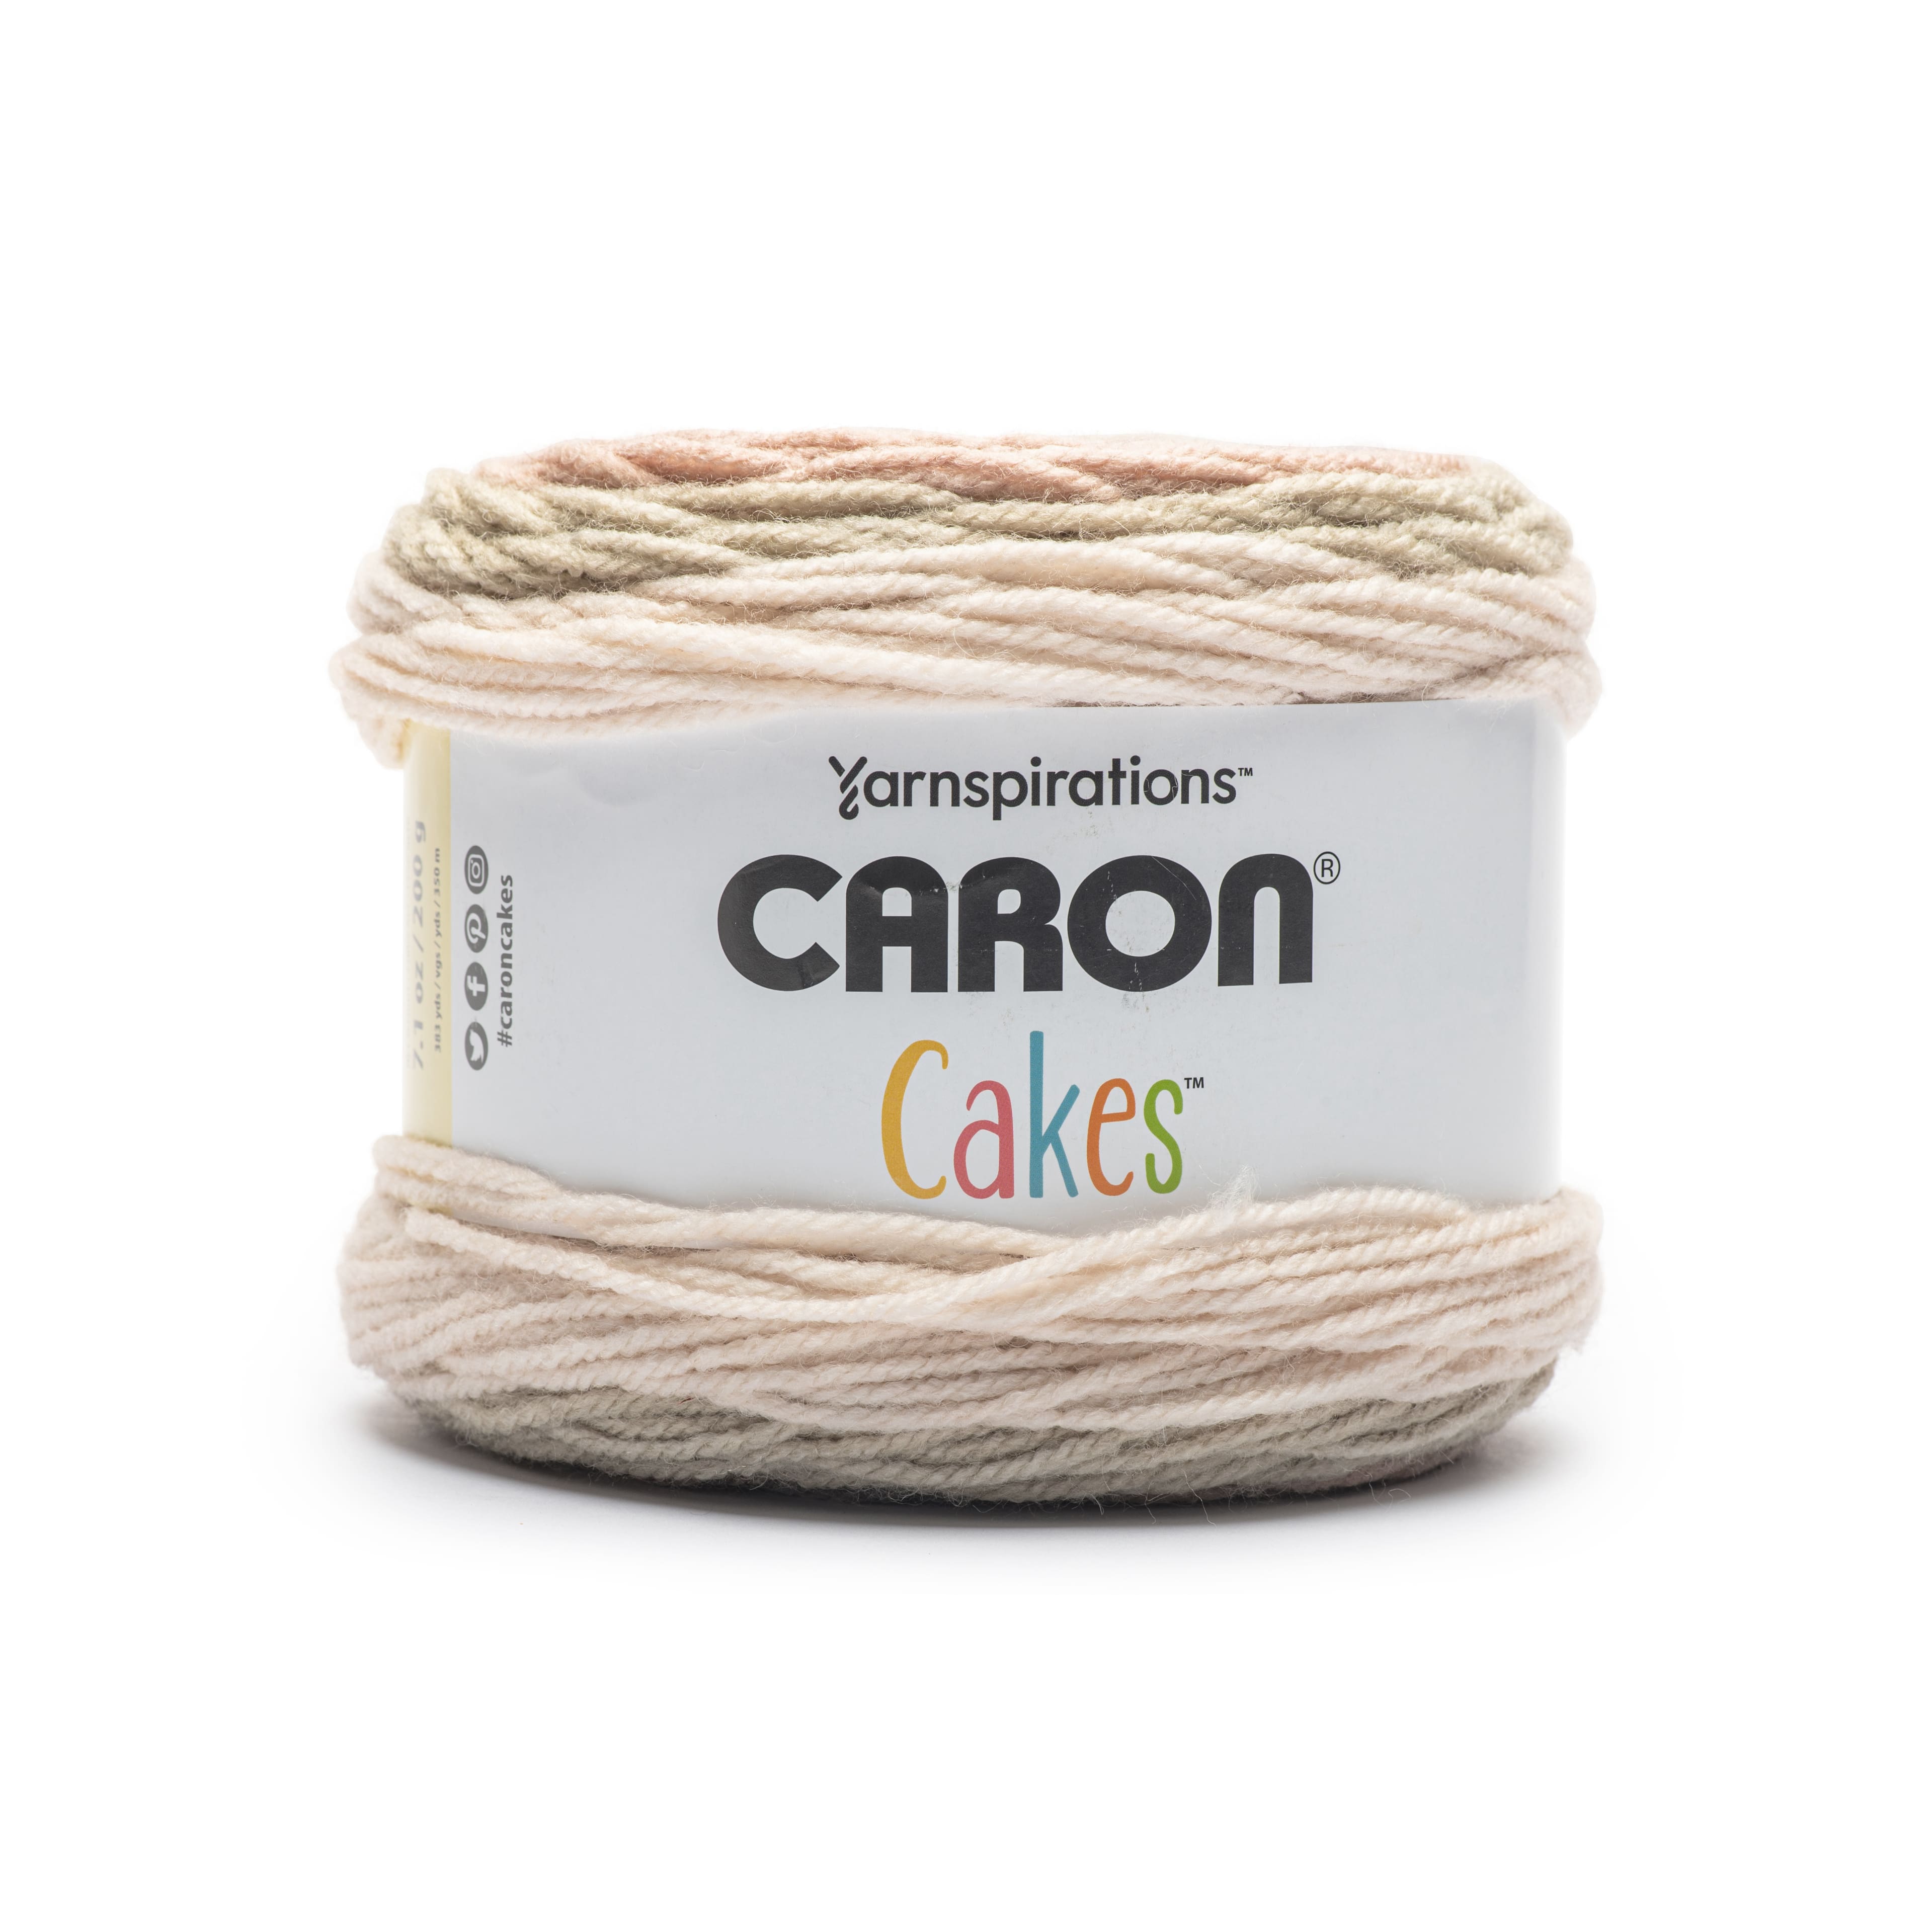 Caron® Cakes™ Yarn in Faerie Cake, 7.1